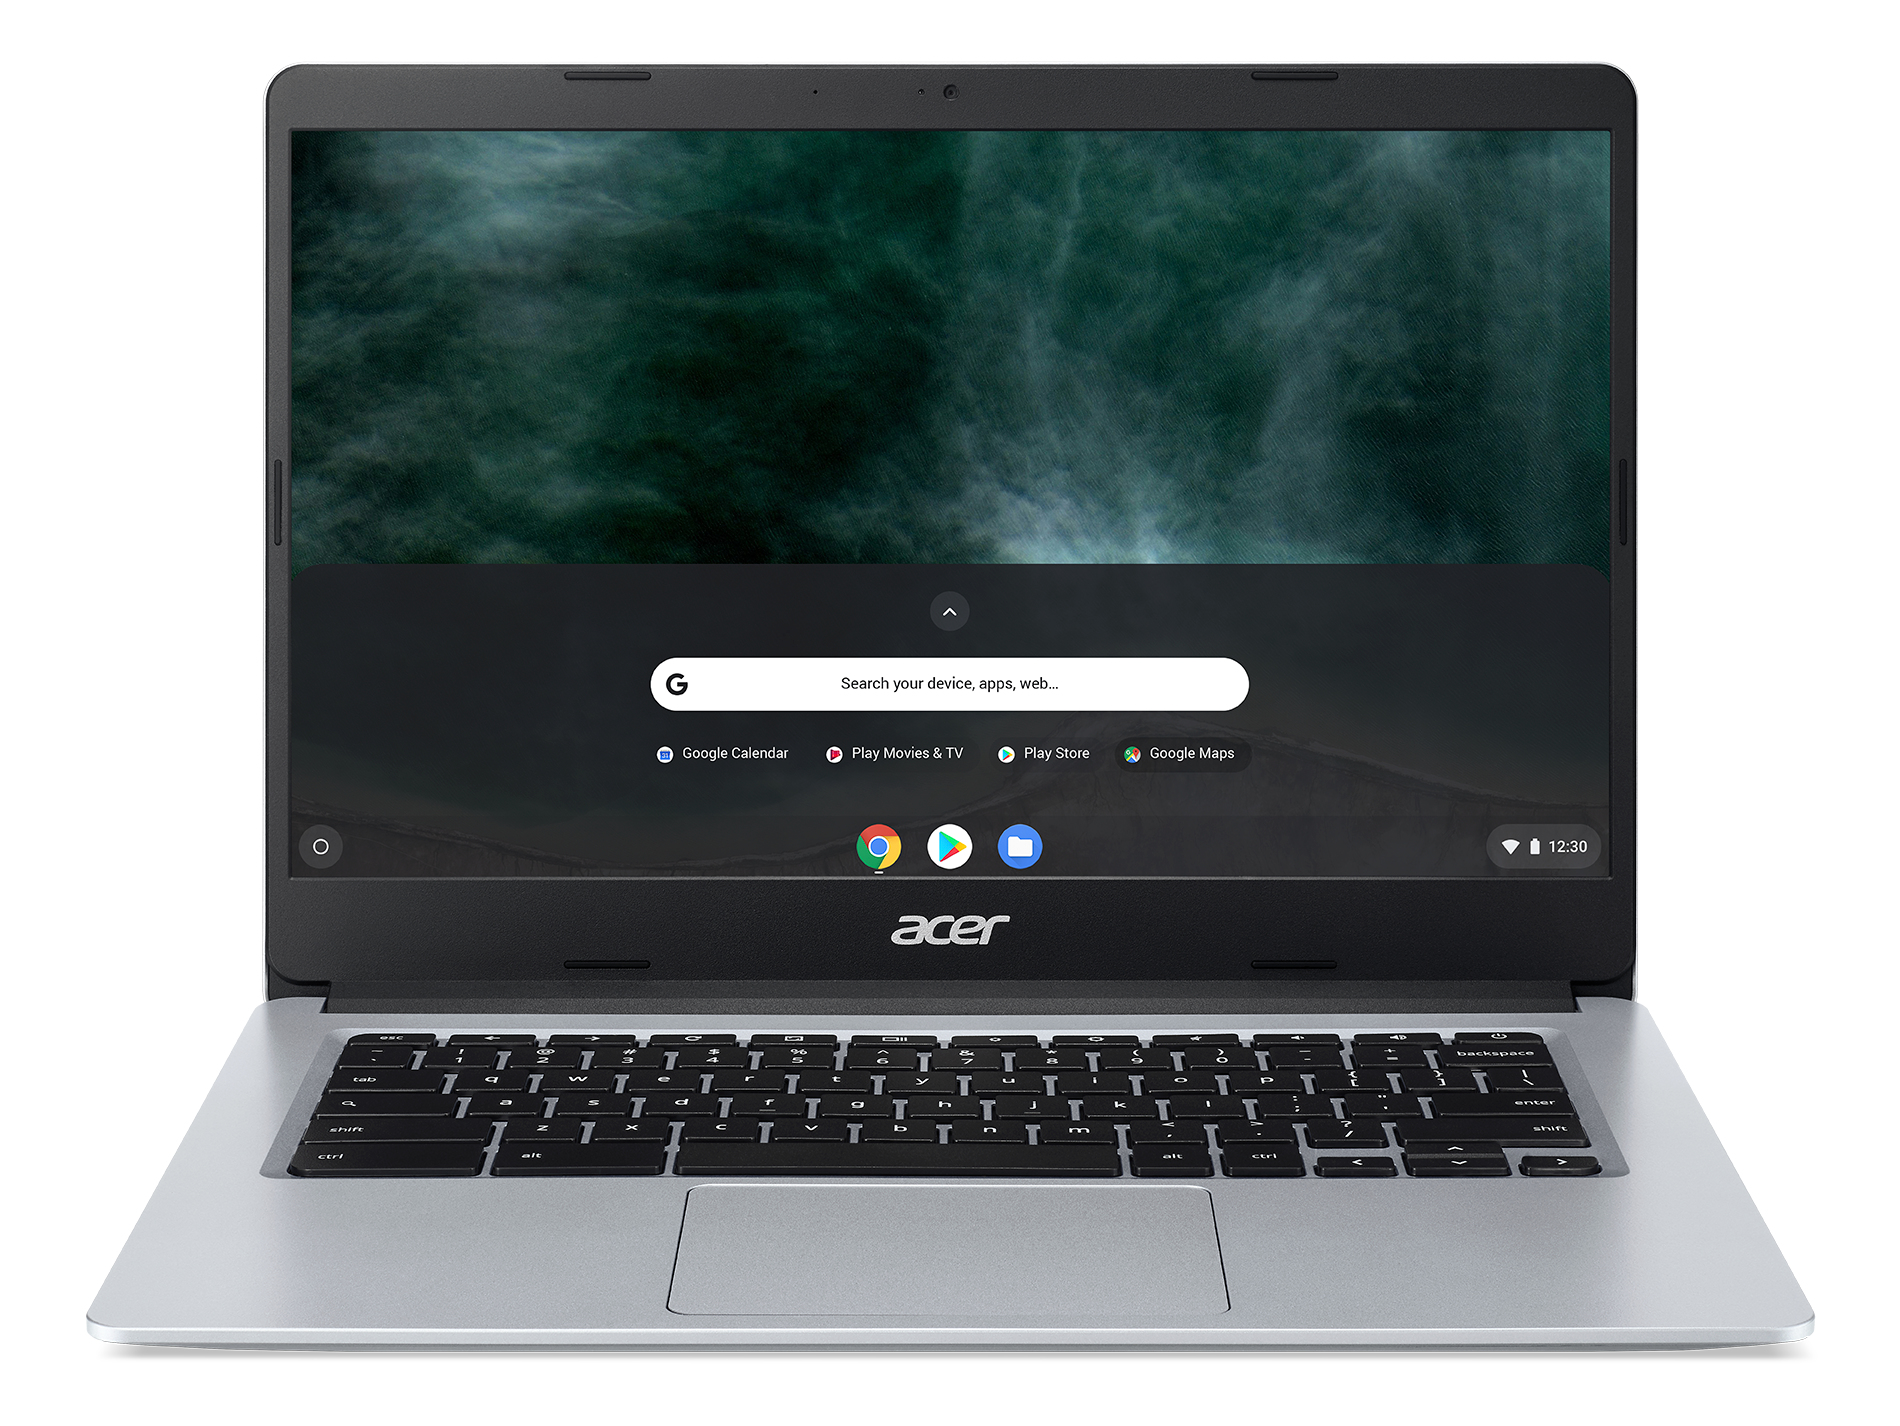 Acer Chromebook Intel Celeron N4020, 4GB, 64GB eMMC, 14 inch Full HD Display, Google Chrome OS, Silver